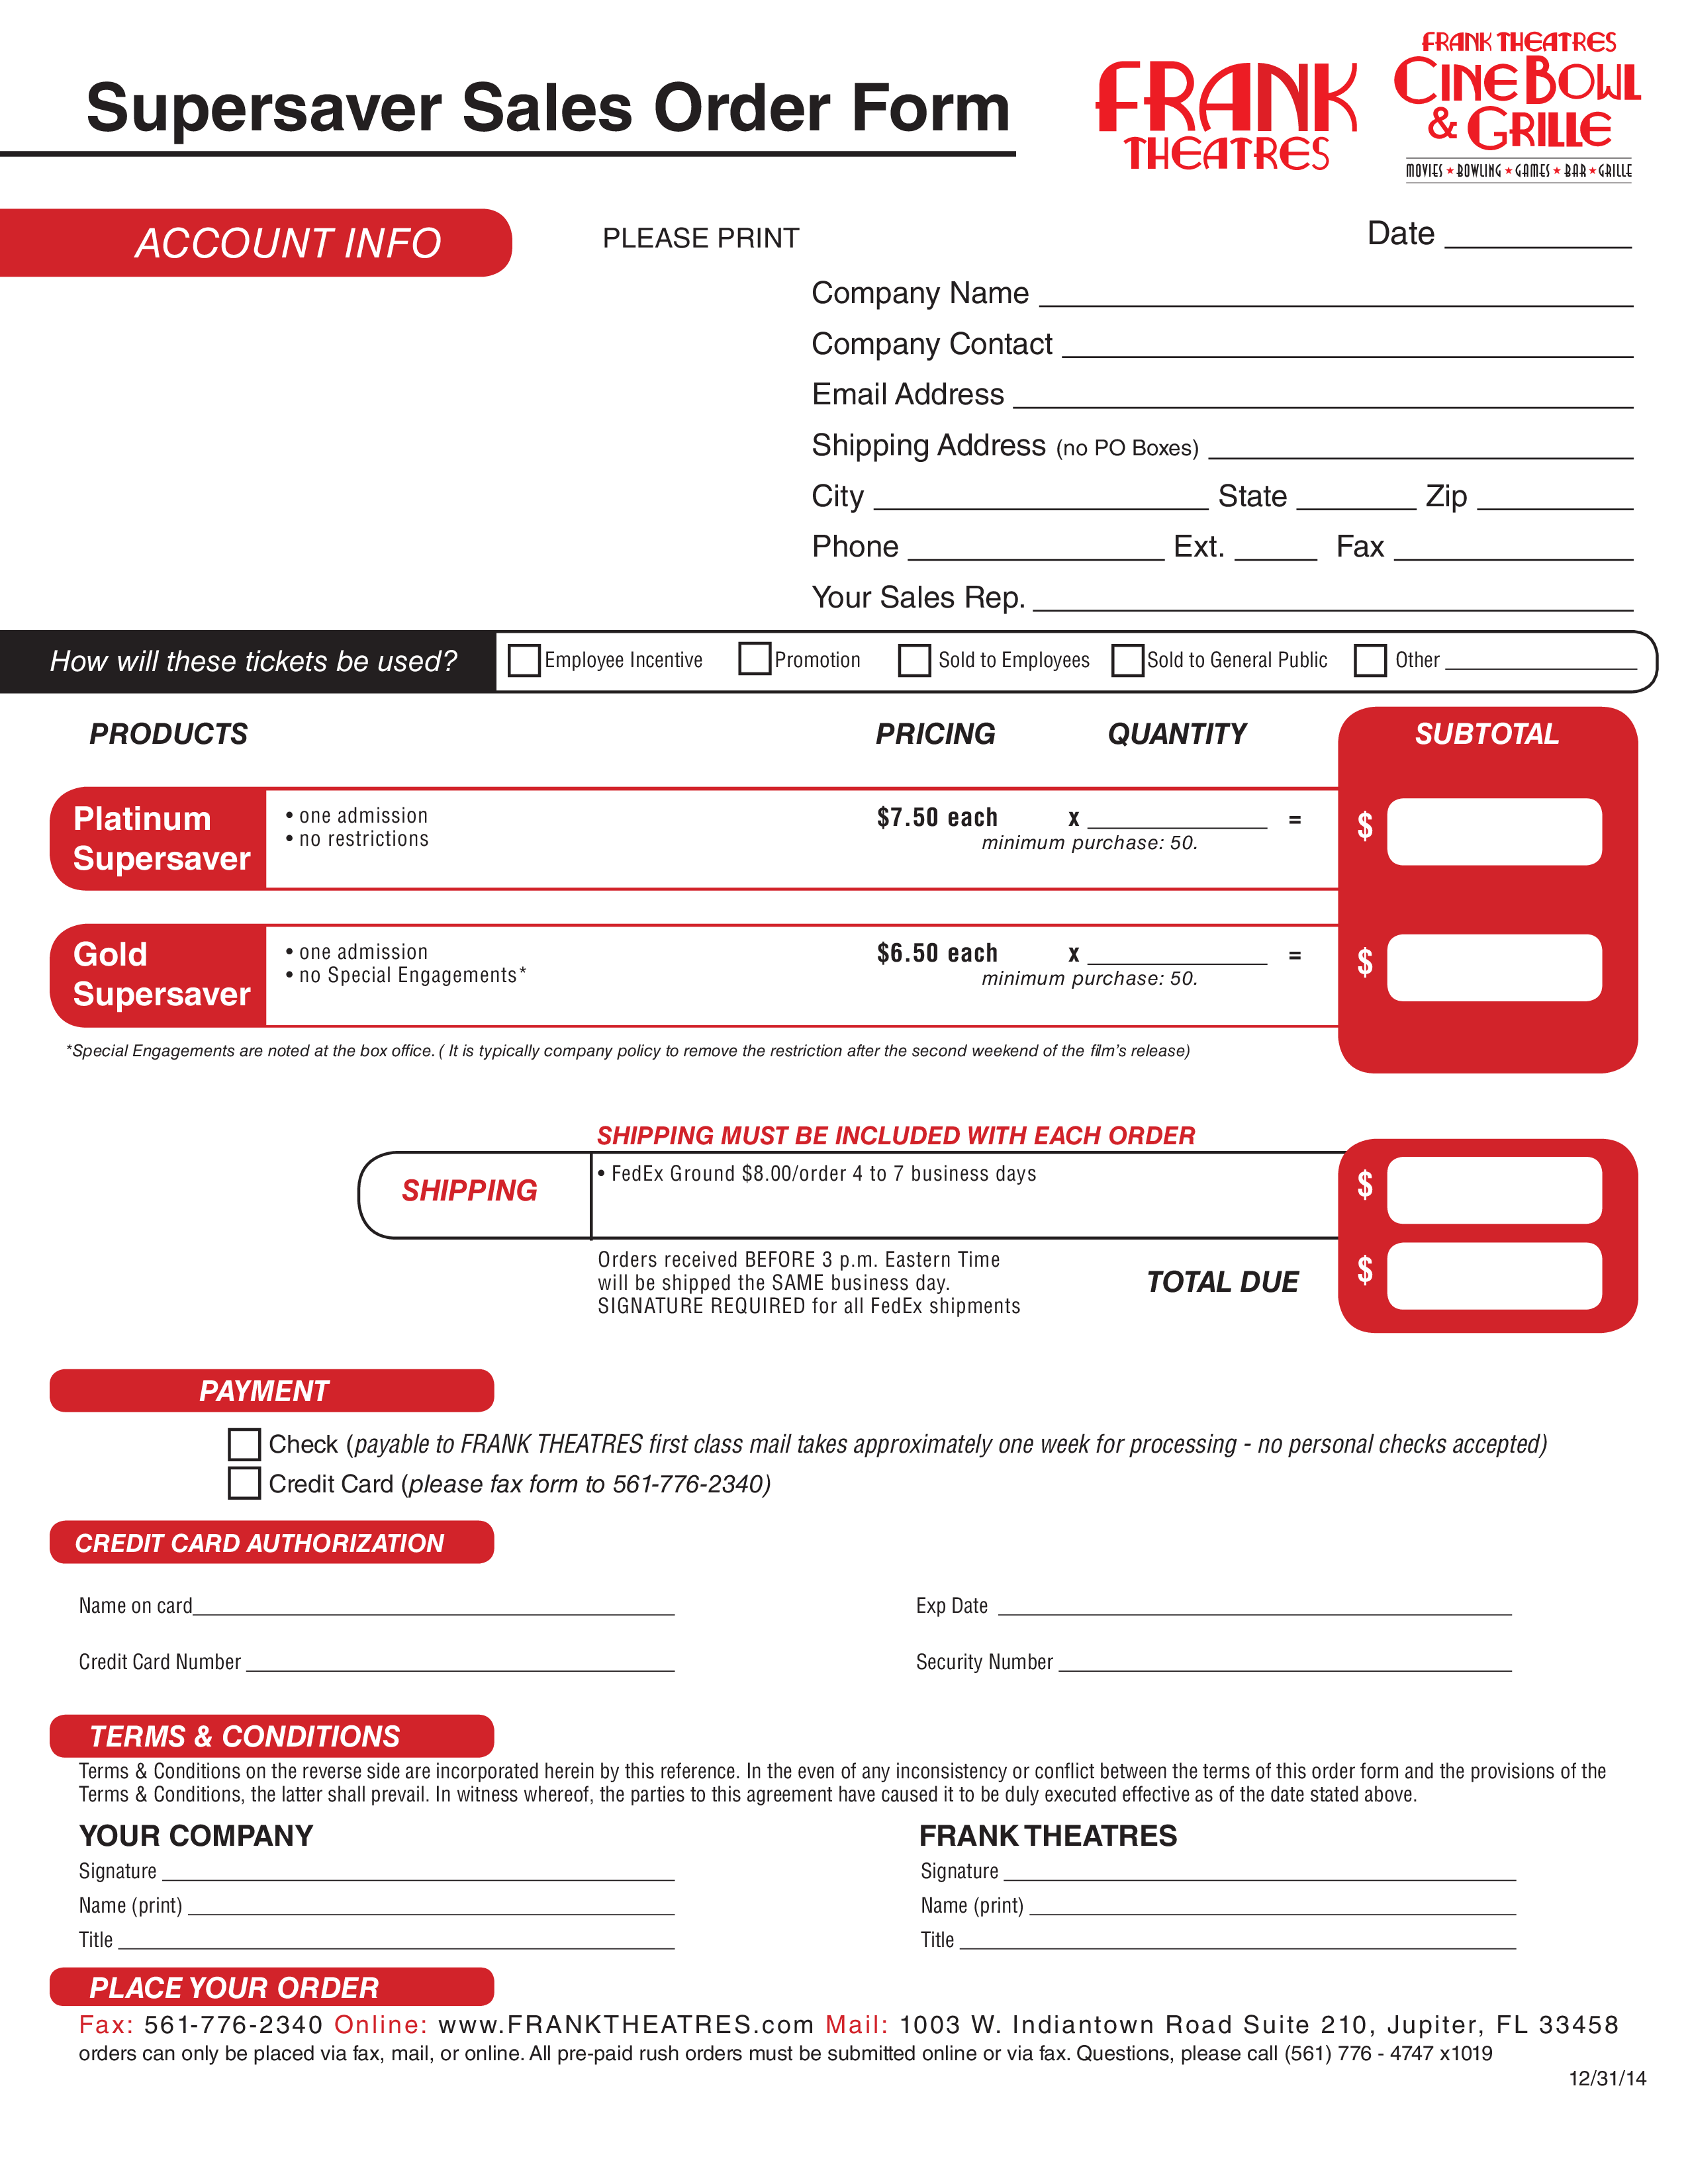 super saver sales order form sample template